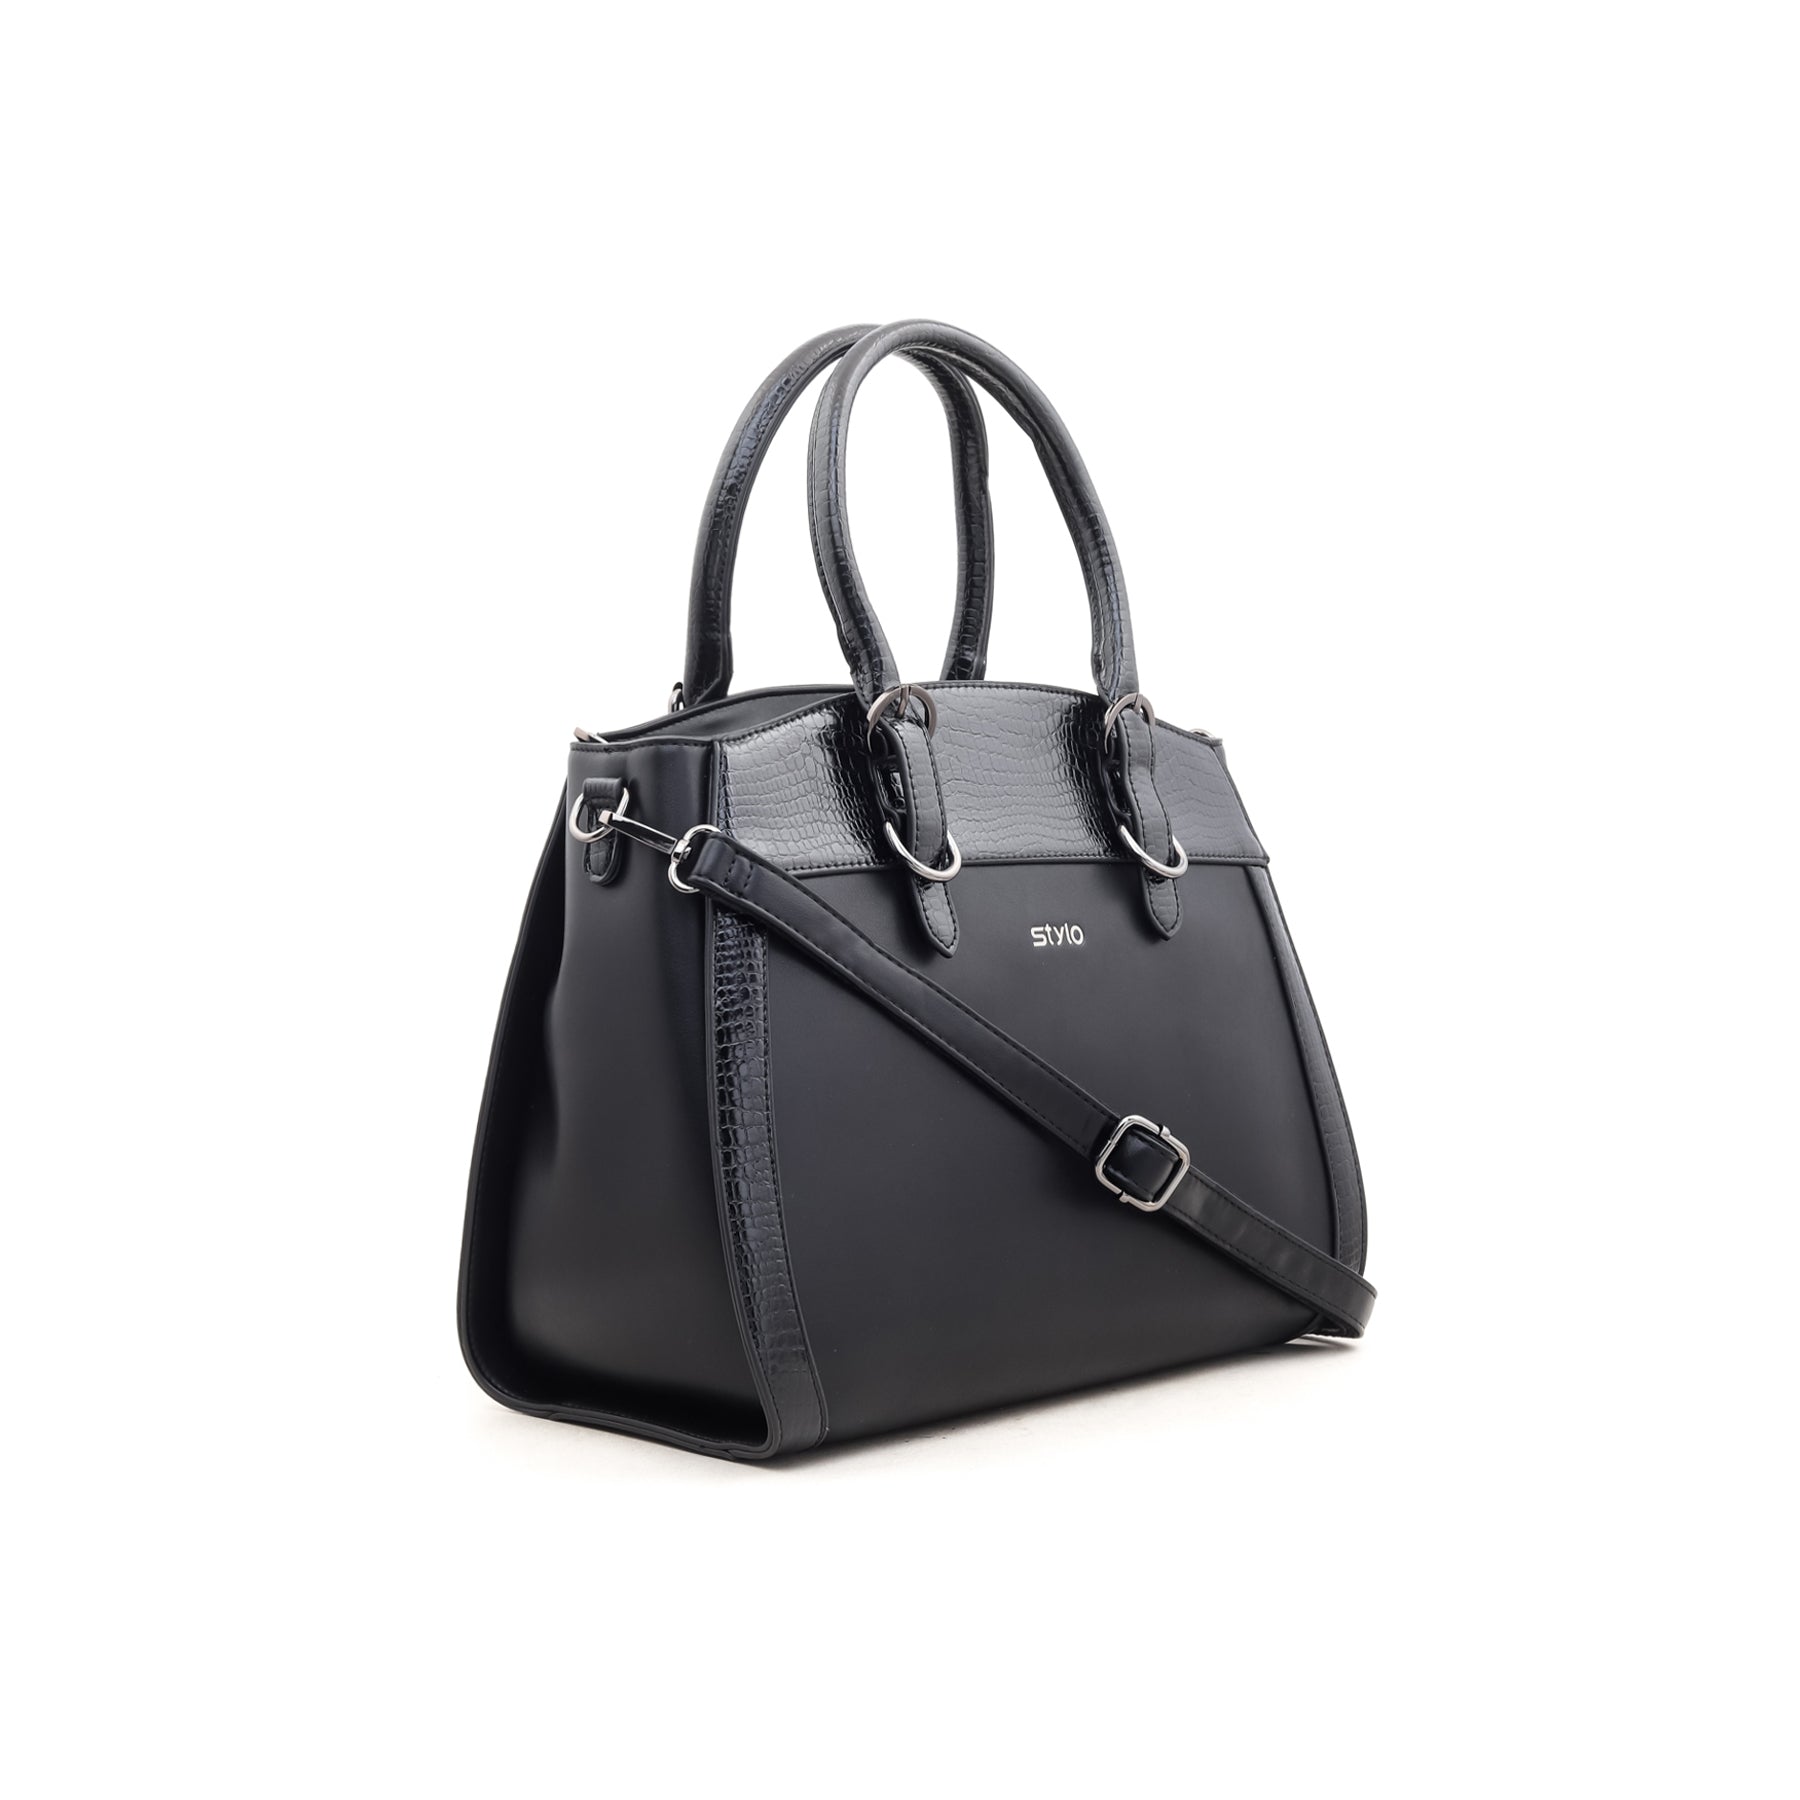 Black Formal Hand Bag P35303